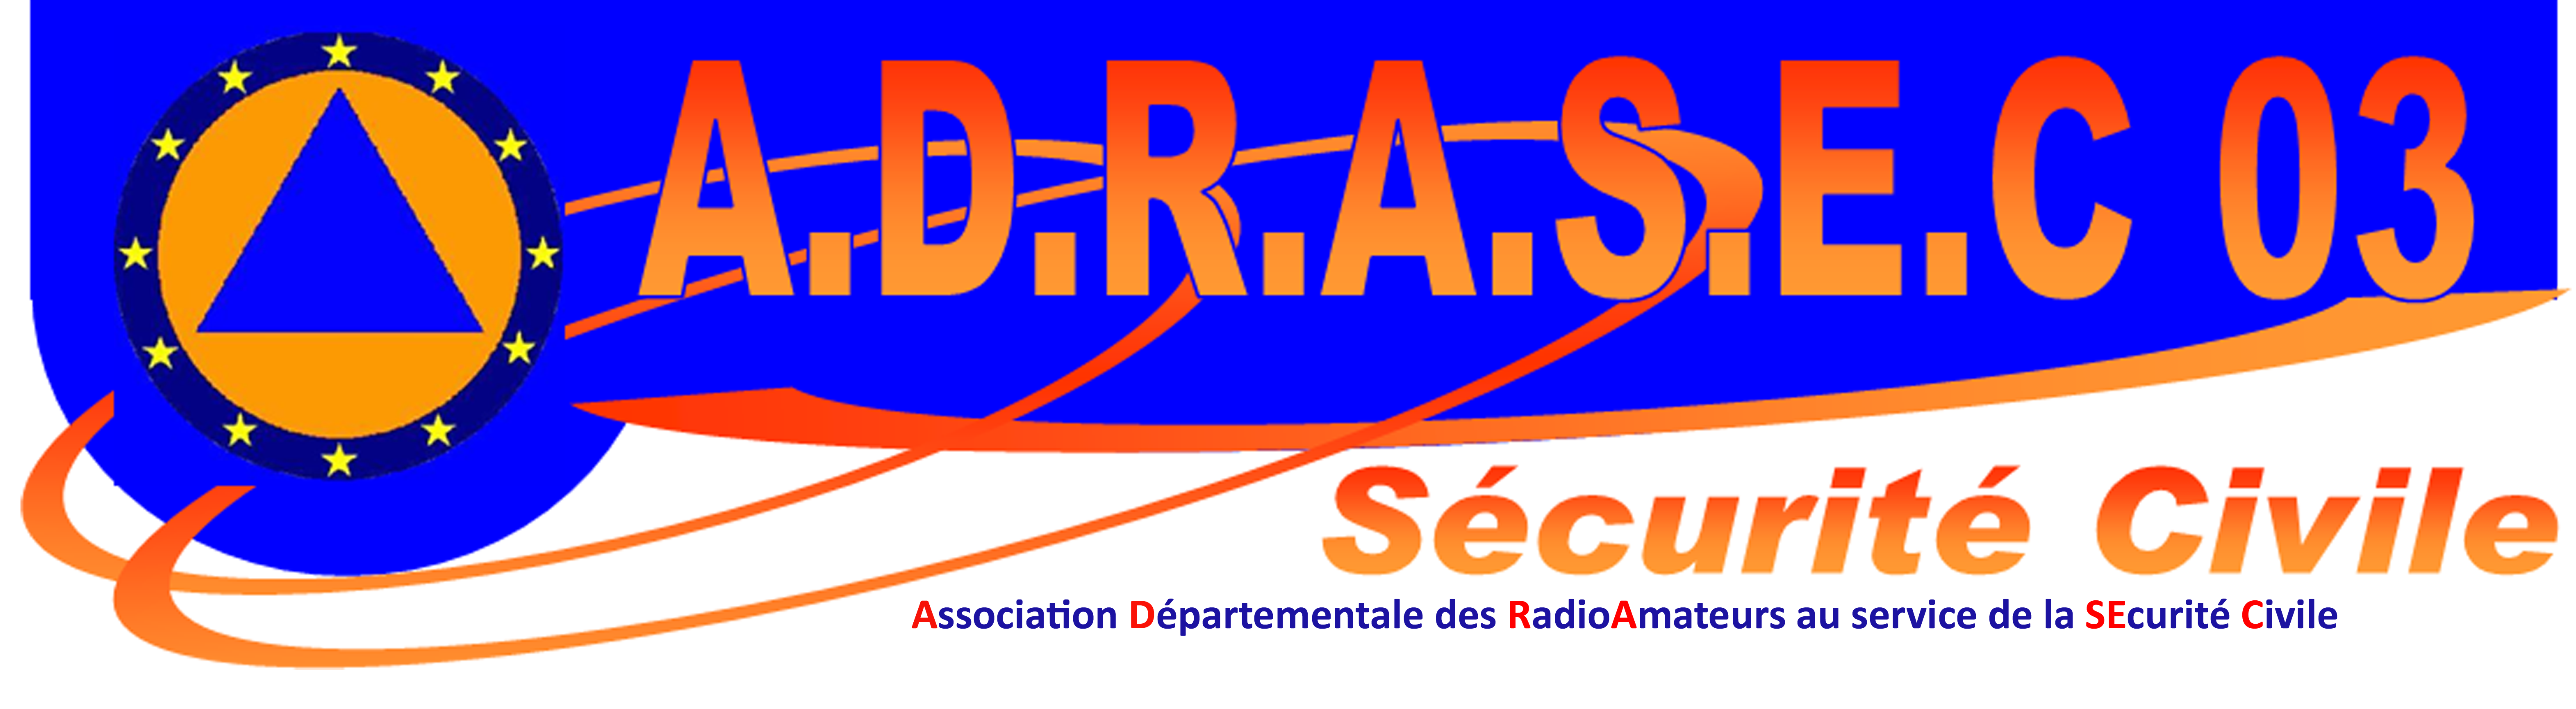 ADRASEC 03 Association Départementale Radioamateurs Au Service Sécurité Civile